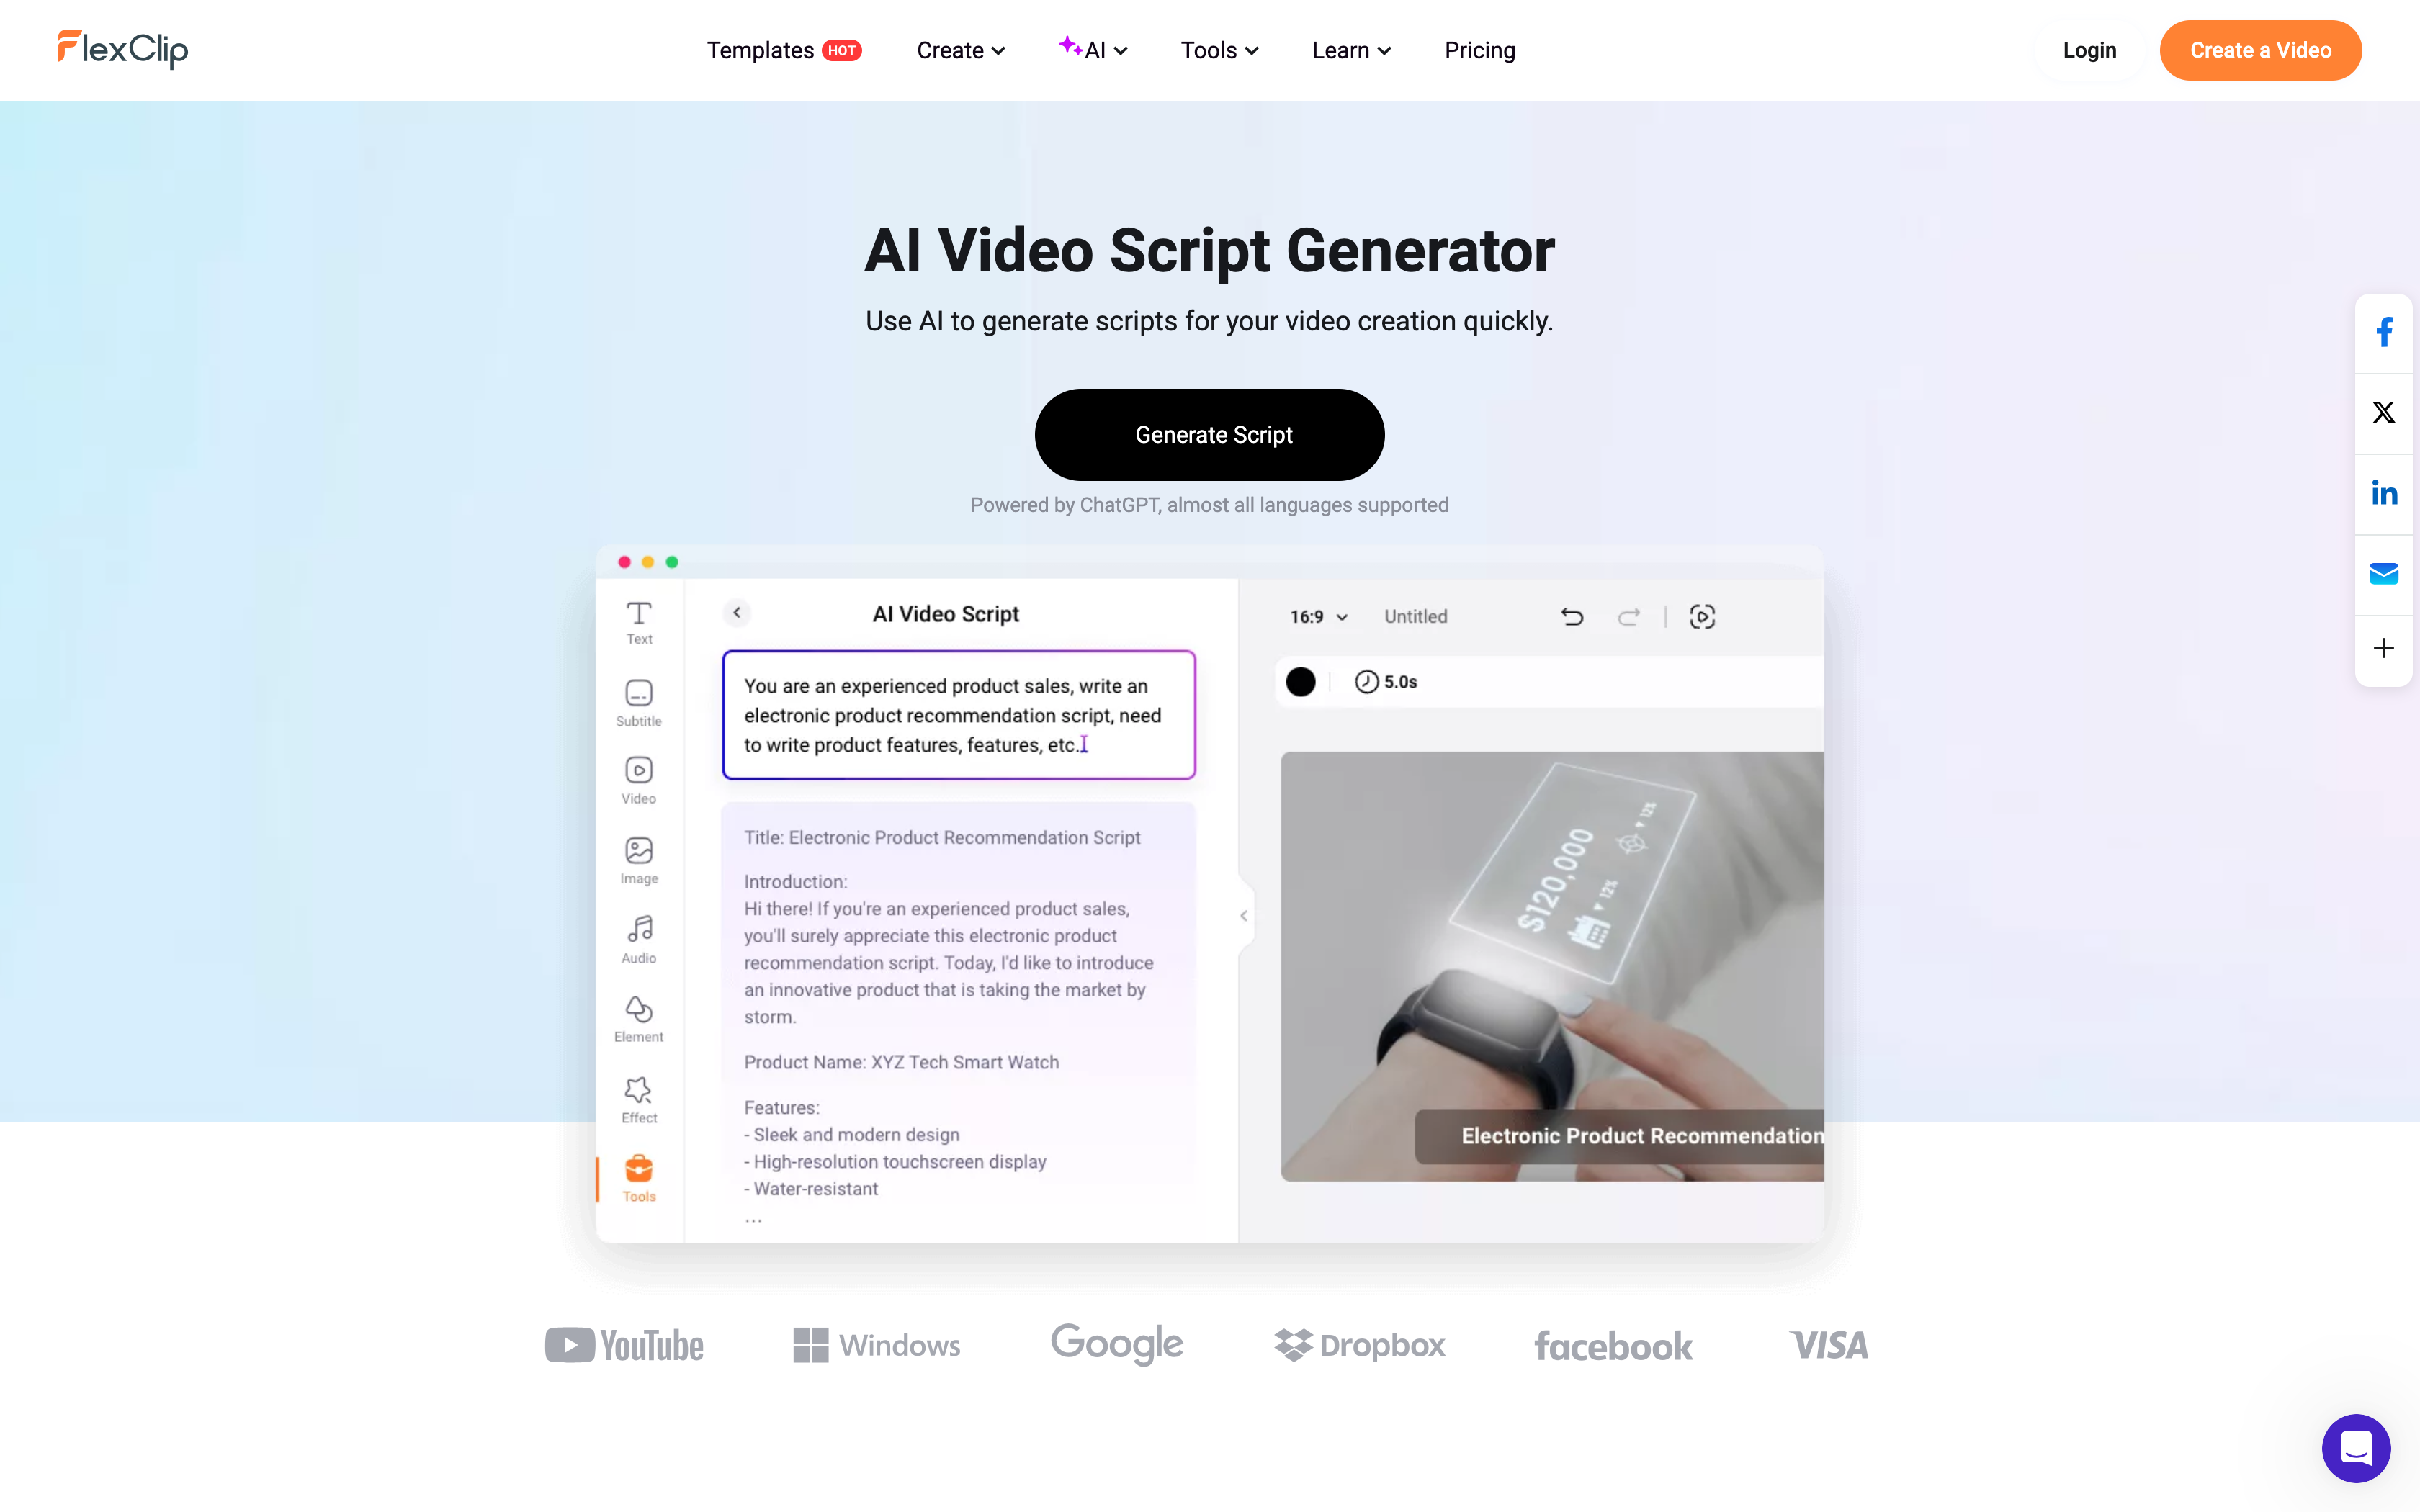 FlexClip AI Video Script Generator